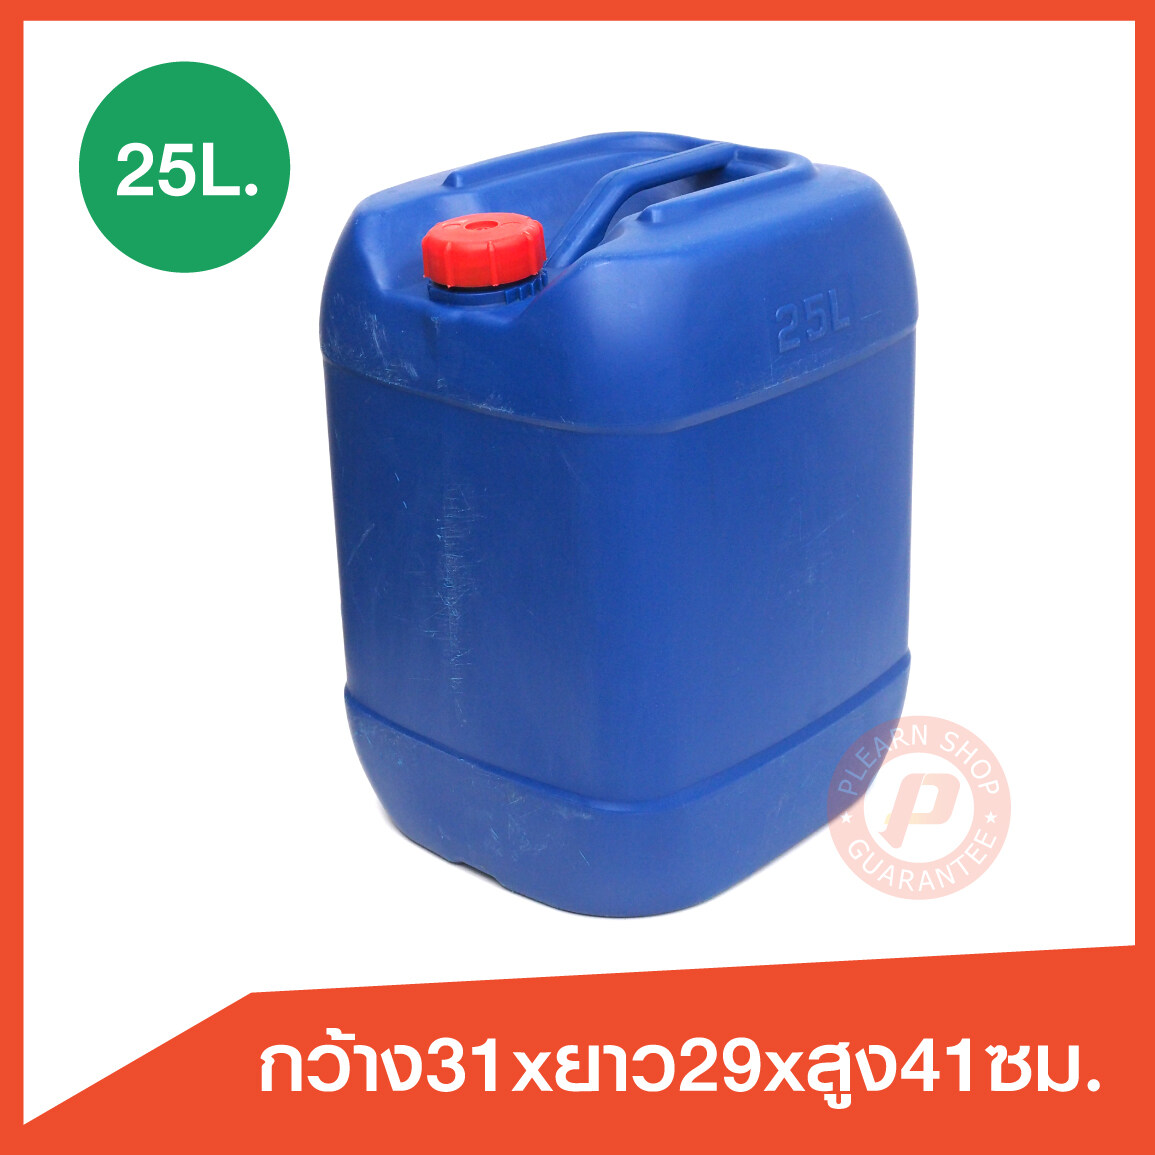 แกลลอนมือสอง (2nd gallon 25L.)ขนาด 25 ลิตร สีน้ำเงิน-ฝาสีแดง ใส่น้ำมัน น้ำหมักจุลินทรีย์ พลาสติกเนื้อหนา เกรดเอ